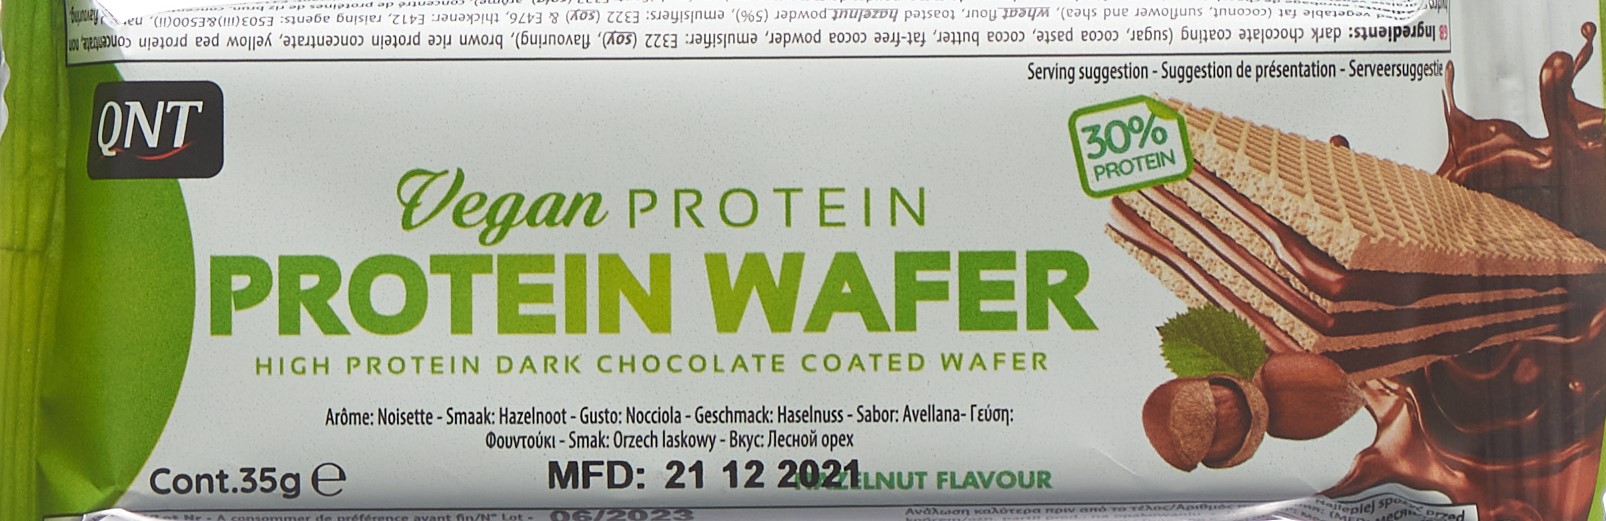 Vegan Protein Wafer